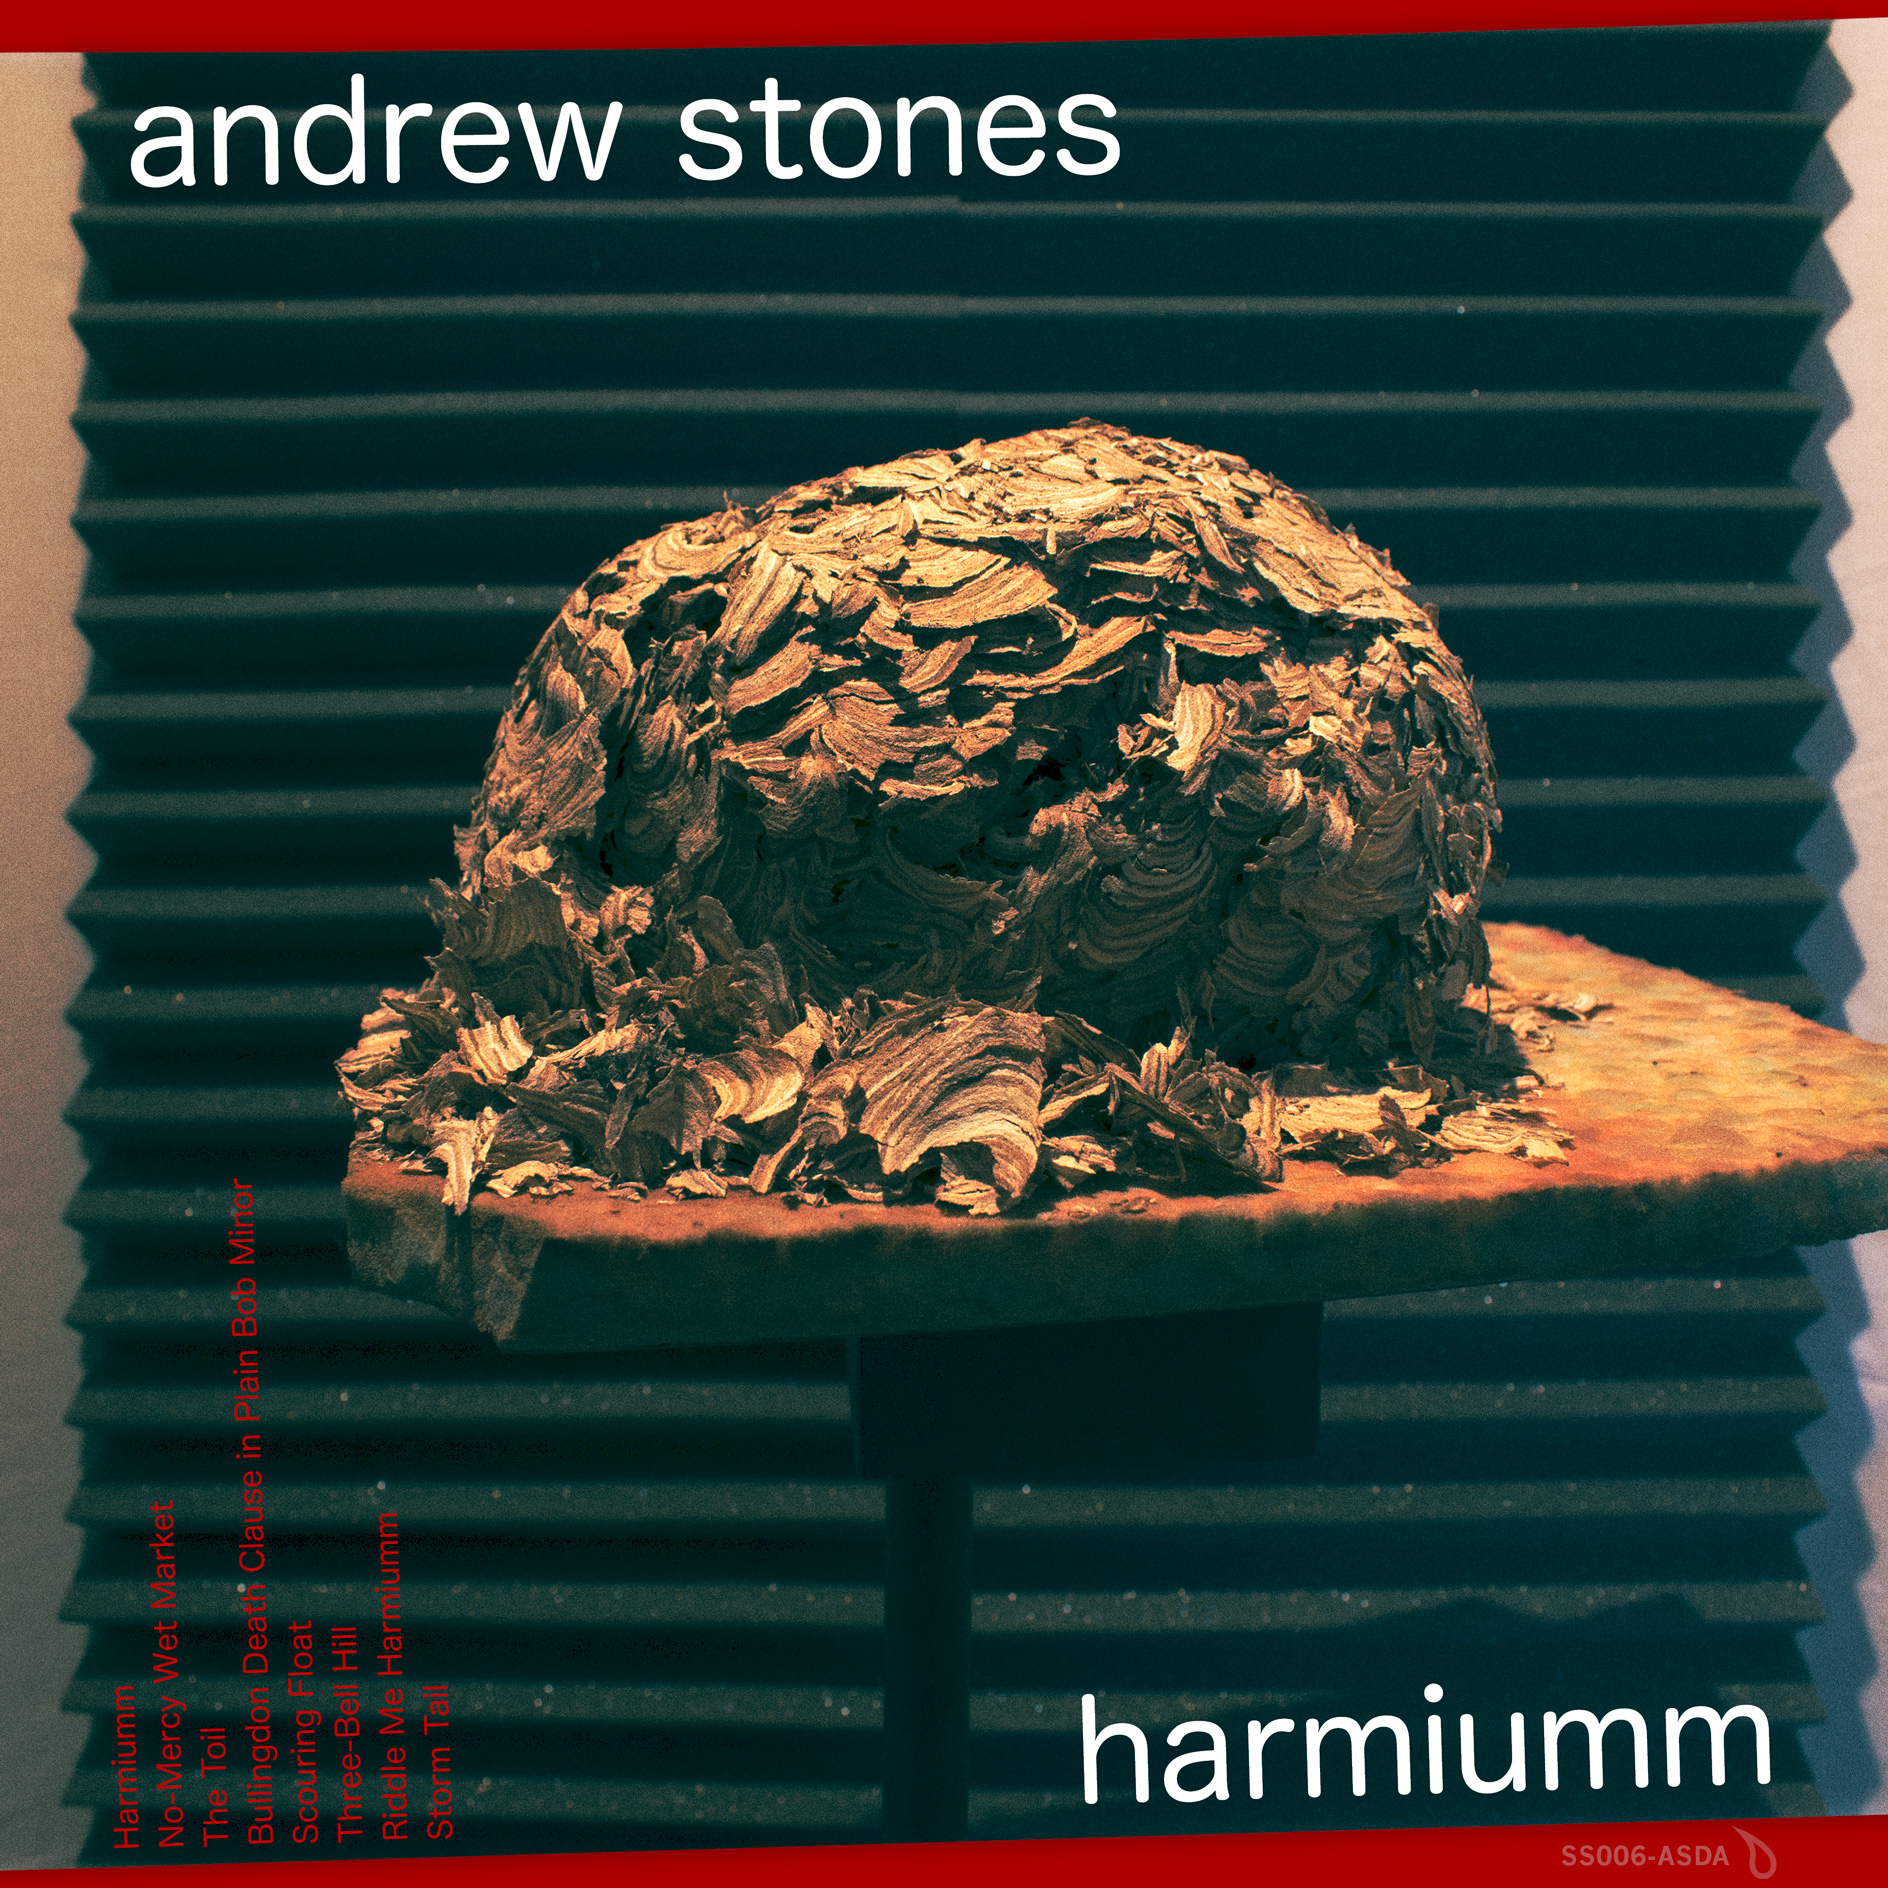 Andrew Stones - Harmiumm. Digital album cover art 2022.